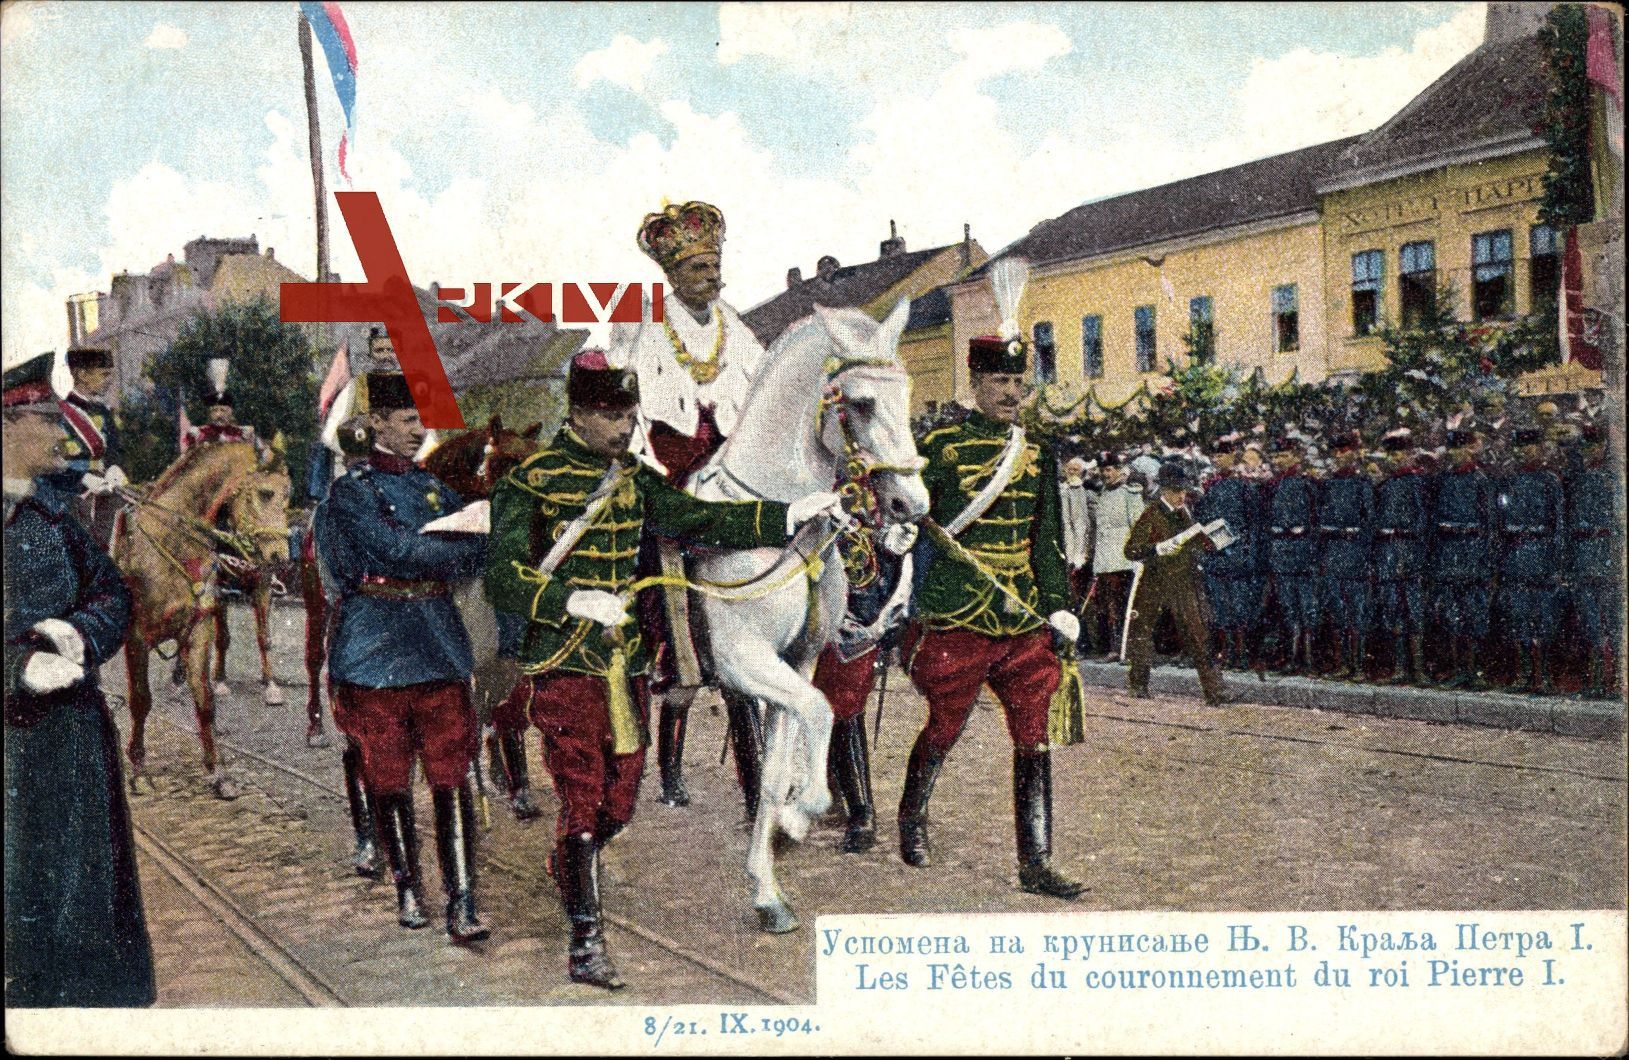 König Peter I. Karadjordjevic von Jugoslawien auf einem Pferd, Parade